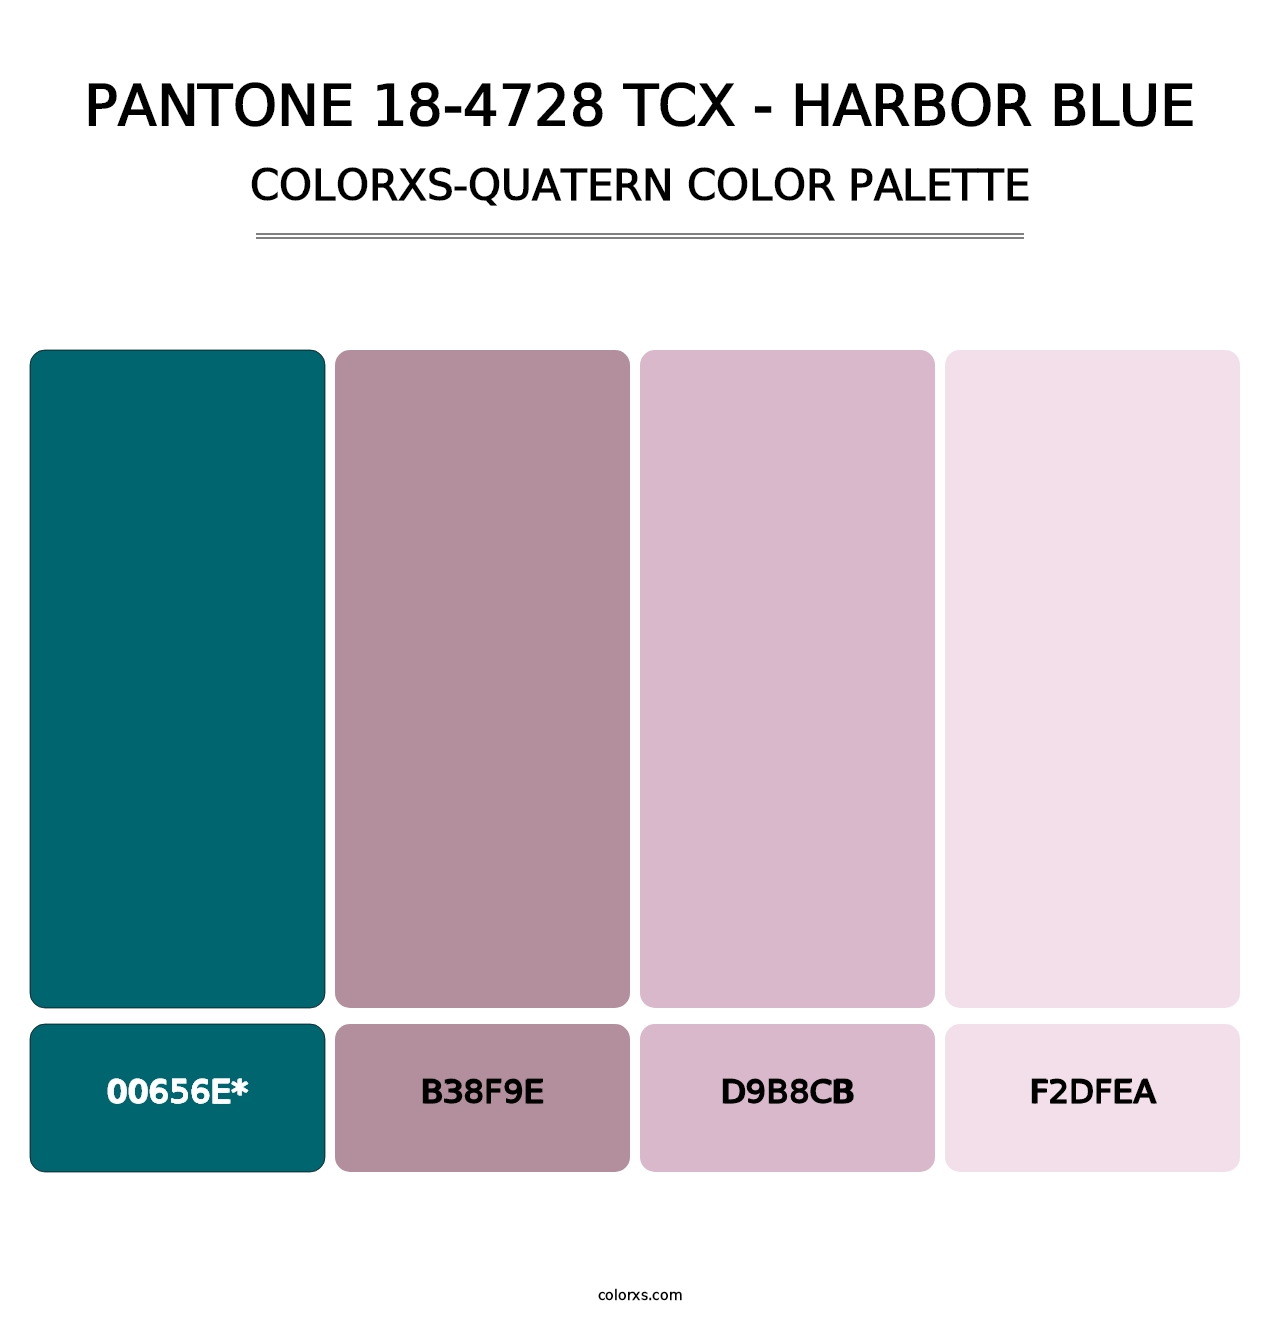 PANTONE 18-4728 TCX - Harbor Blue - Colorxs Quatern Palette